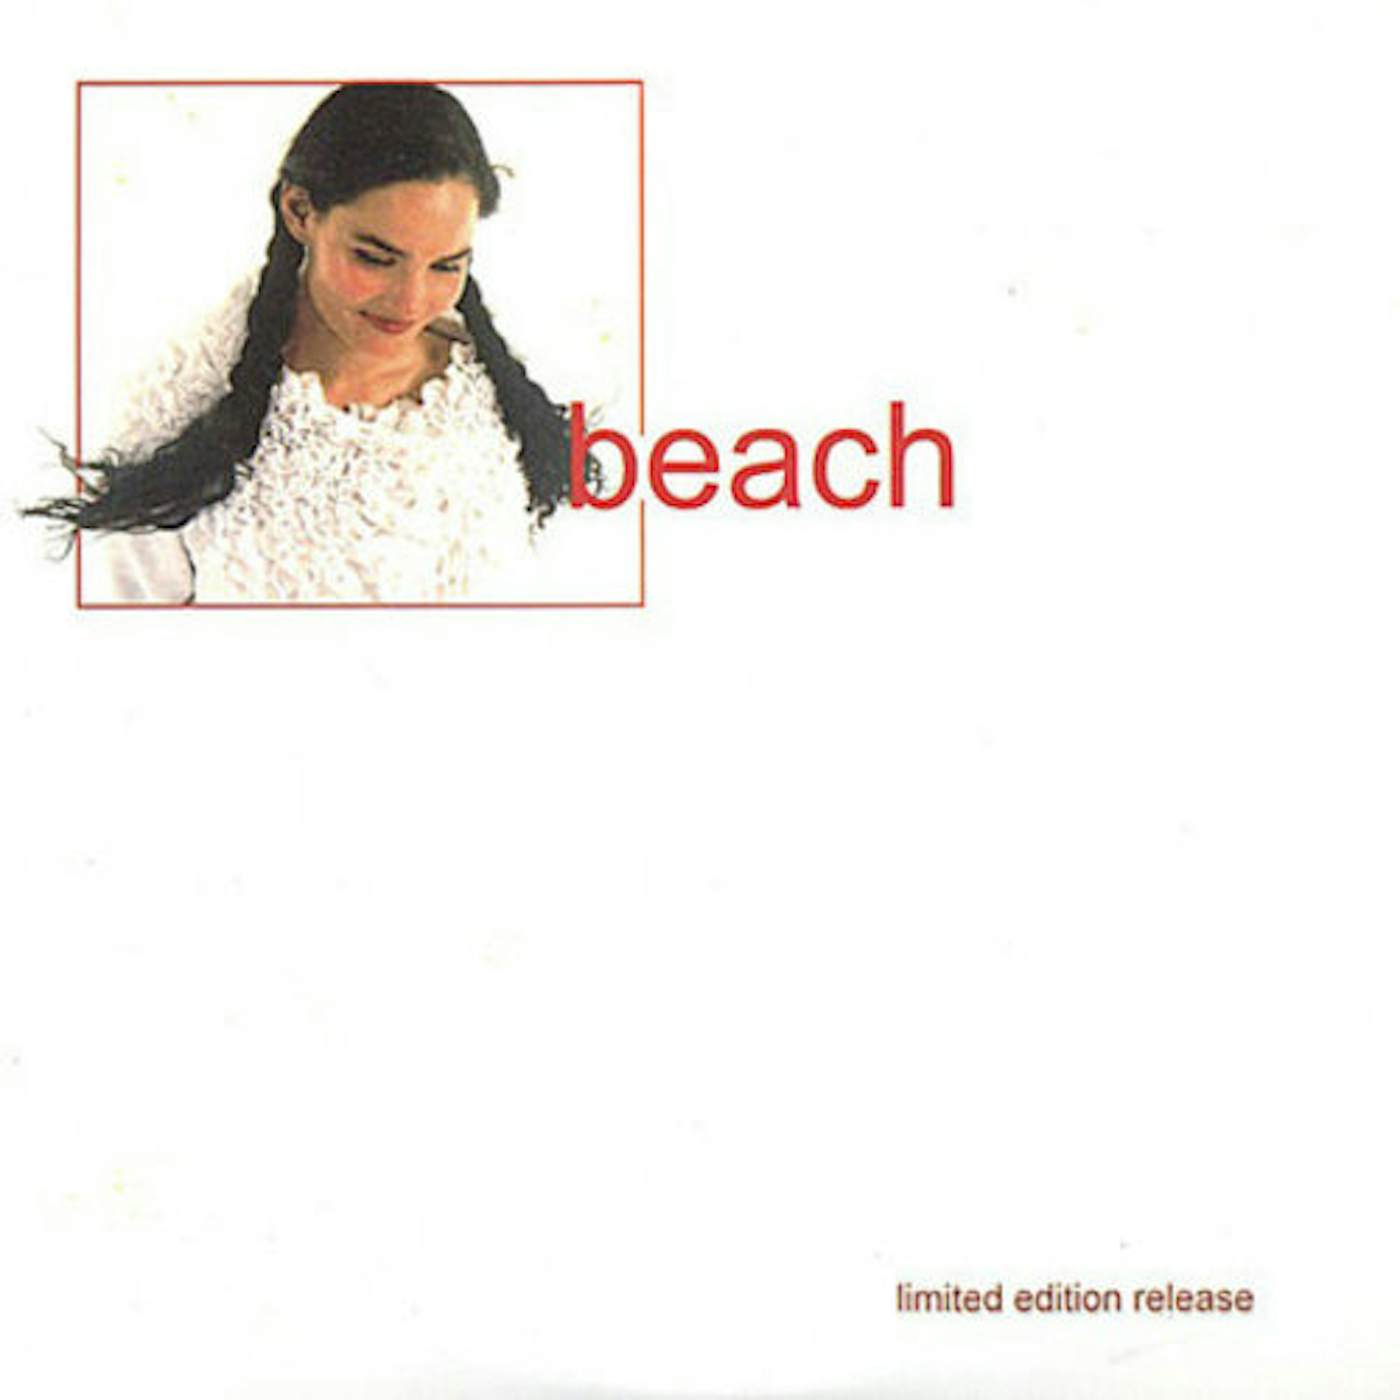 The Beach CD